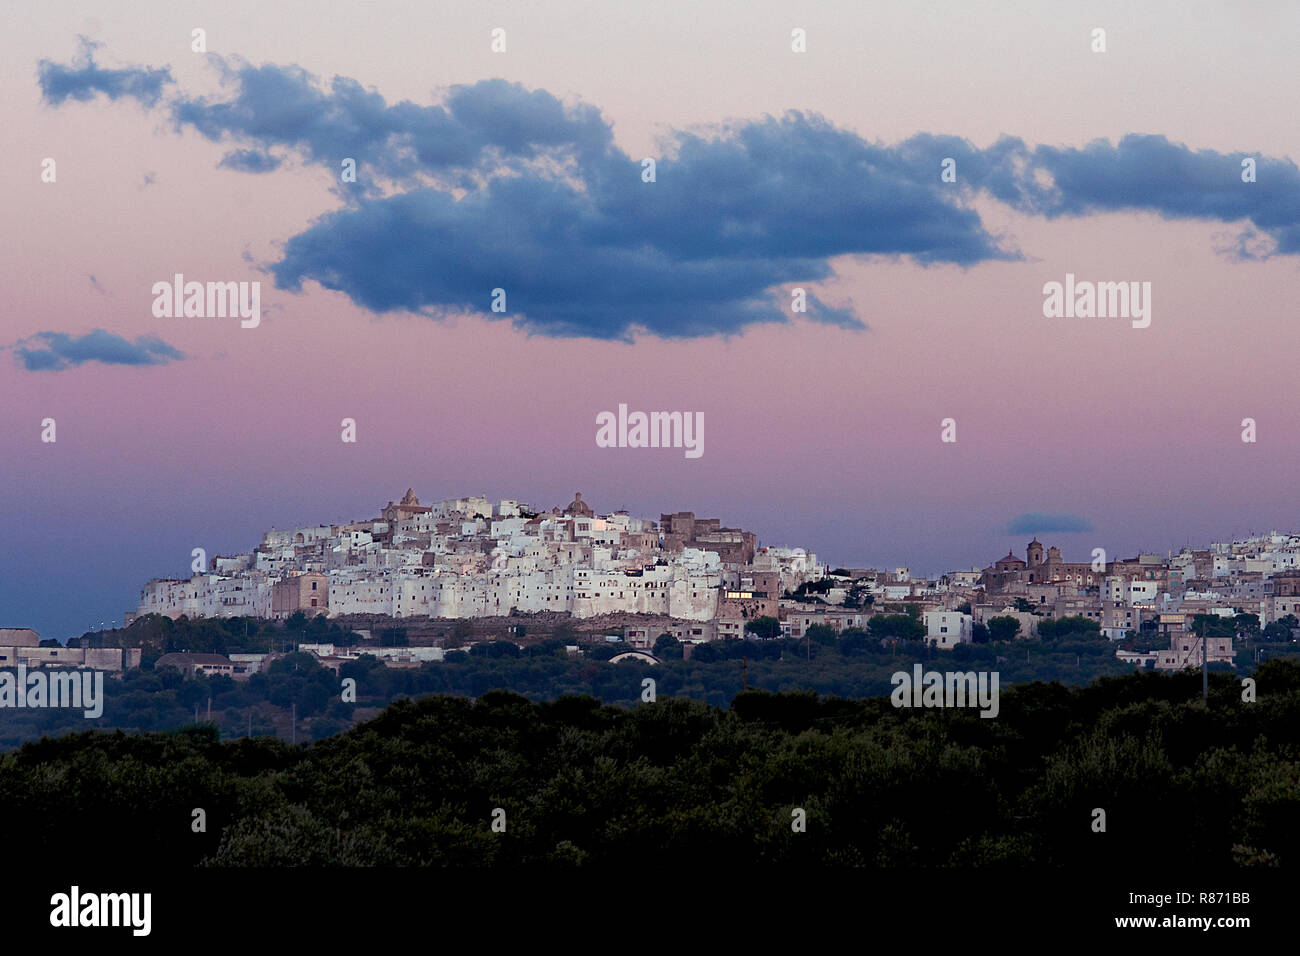 La pittoresque vieille ville d'Ostuni, dans le sud de l'Italie dans l'incandescence de rose au coucher du soleil. Banque D'Images